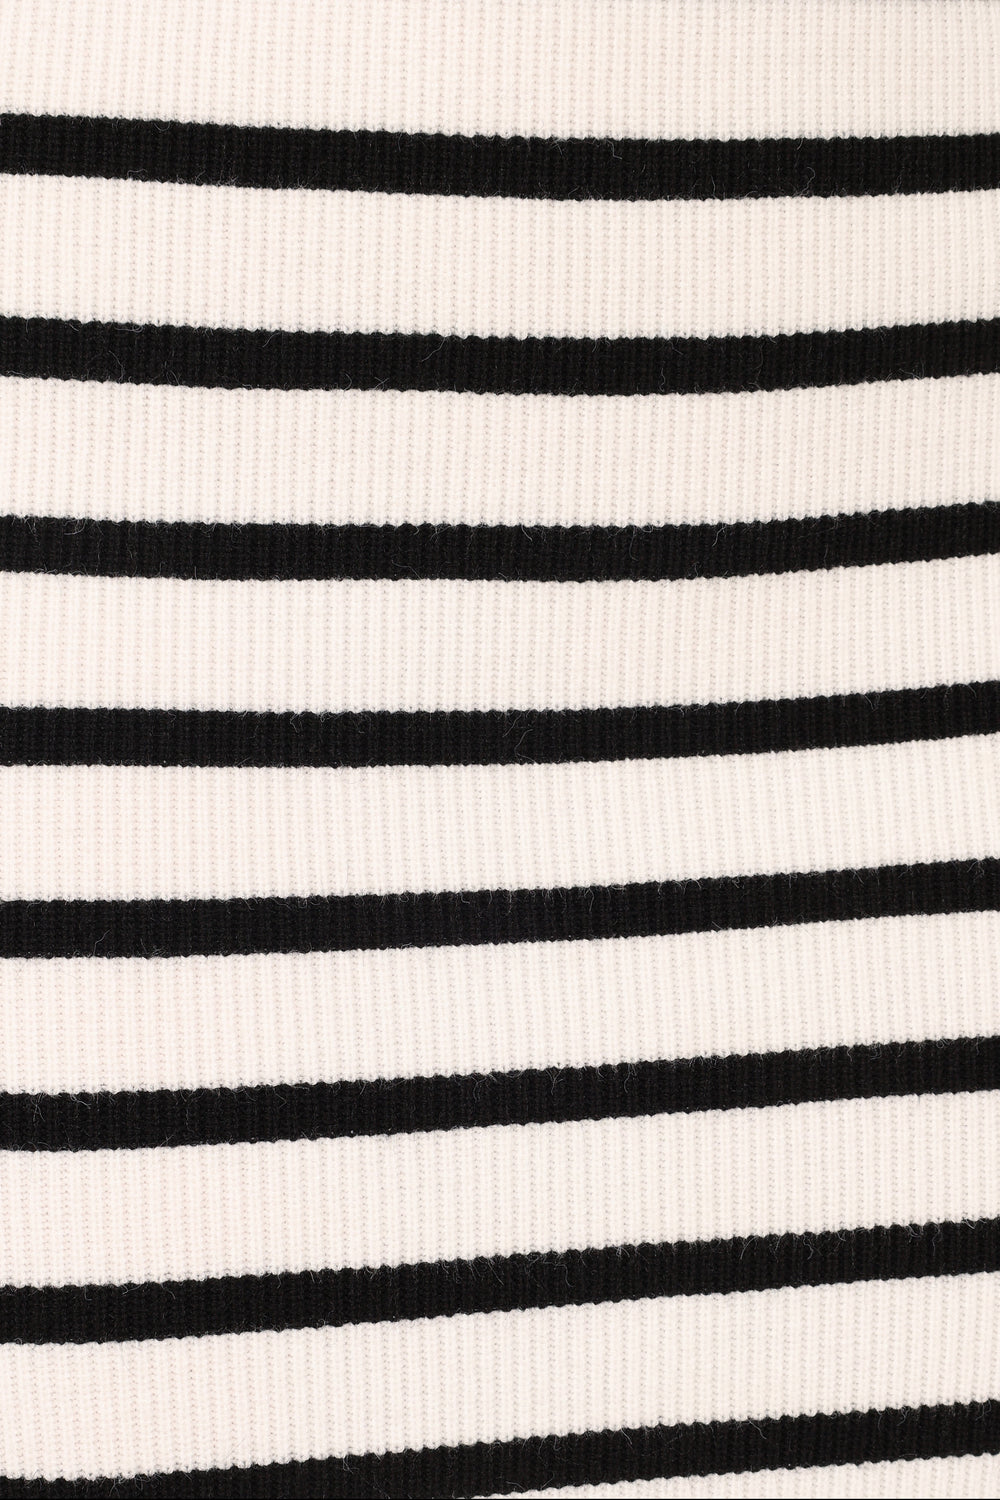 BOTTOMS @Chantelle Knit Midi Skirt - Stripe